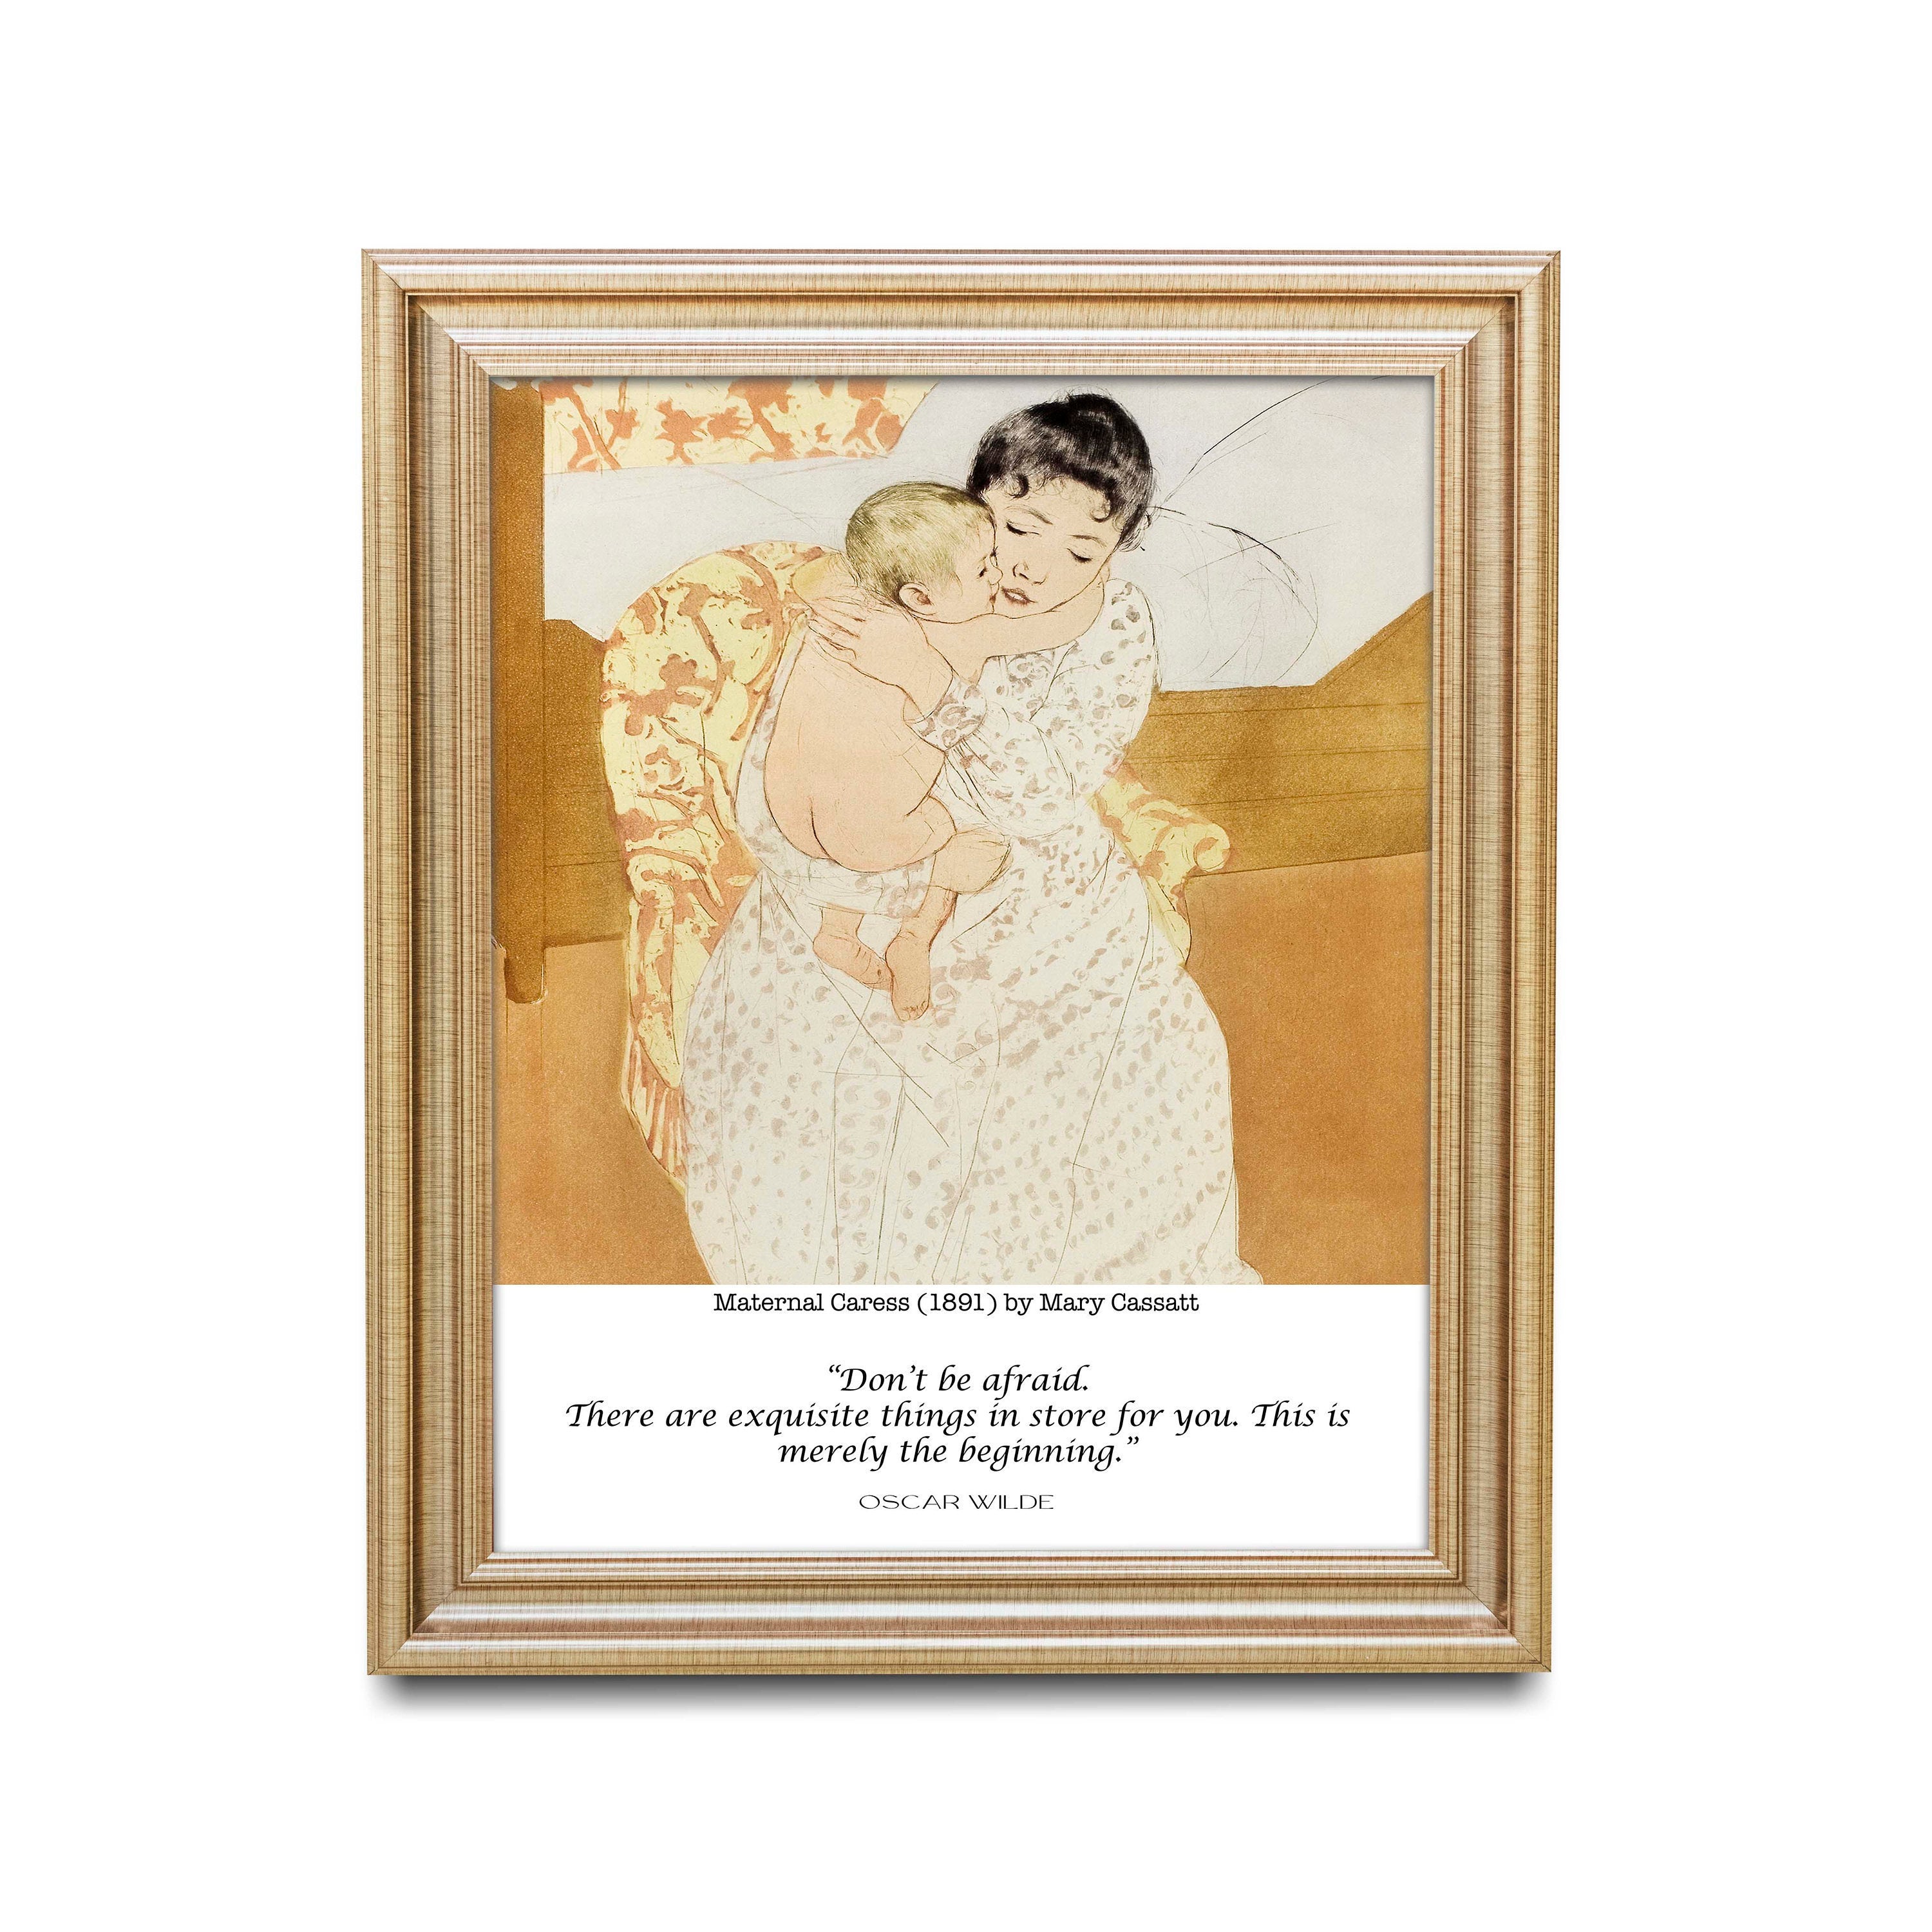 Oscar Wilde and Mary Cassatt Art Print - Maternal Caress, Don't Be Afraid